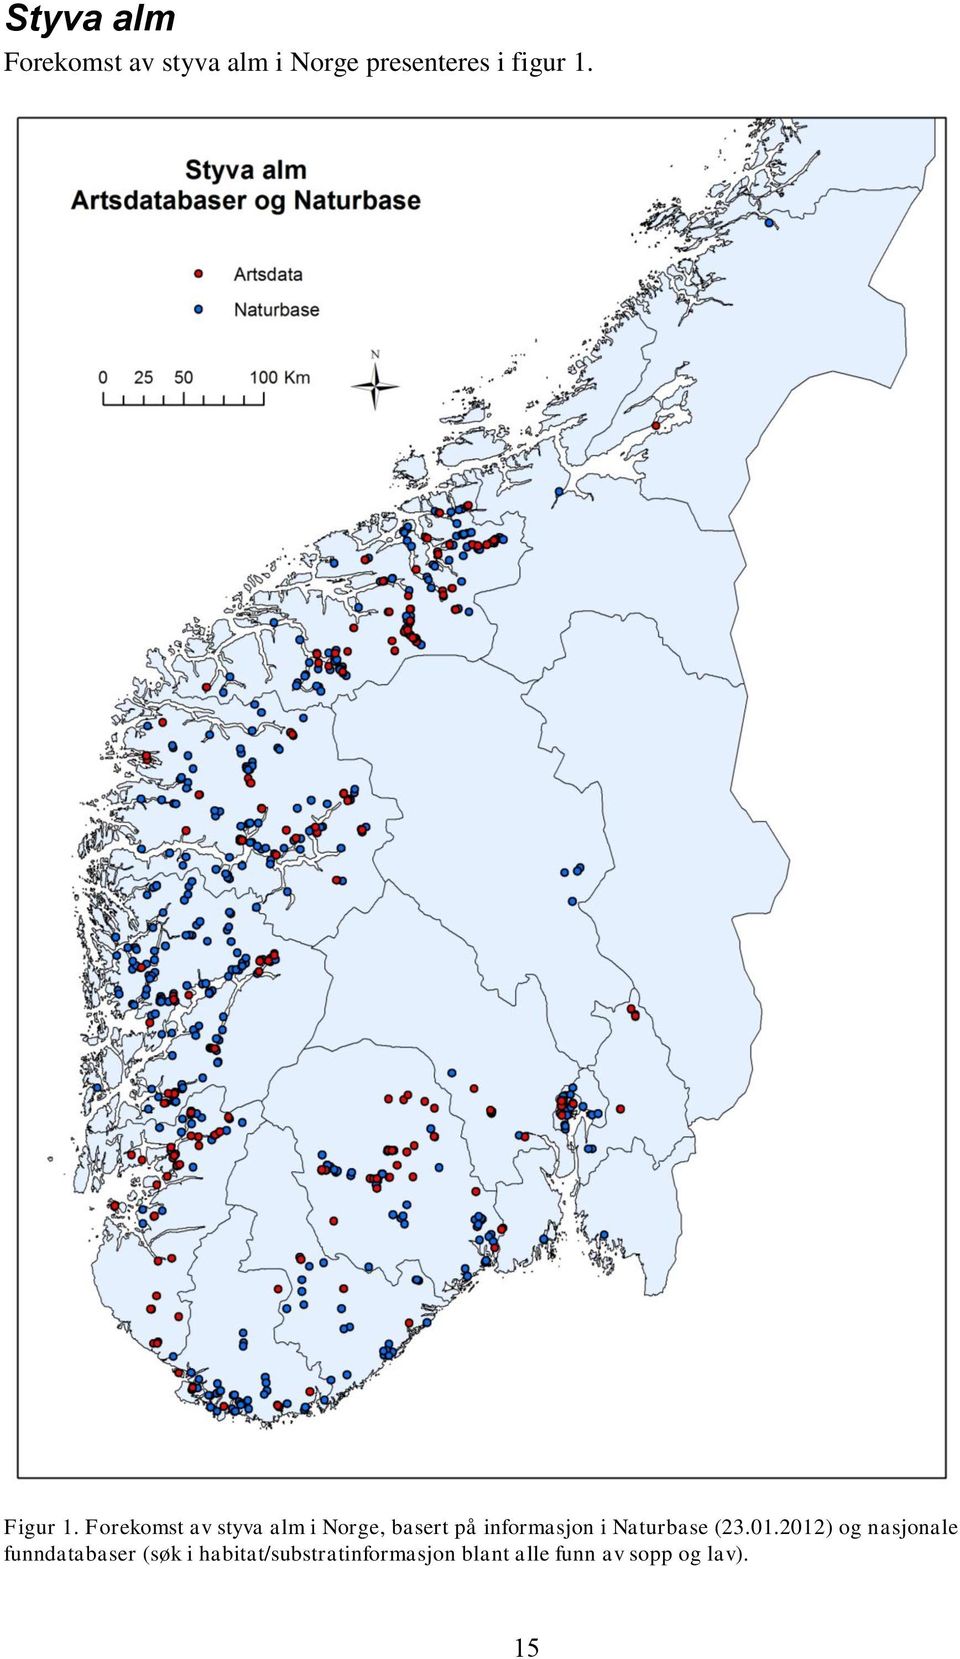 Forekomst av styva alm i Norge, basert på informasjon i